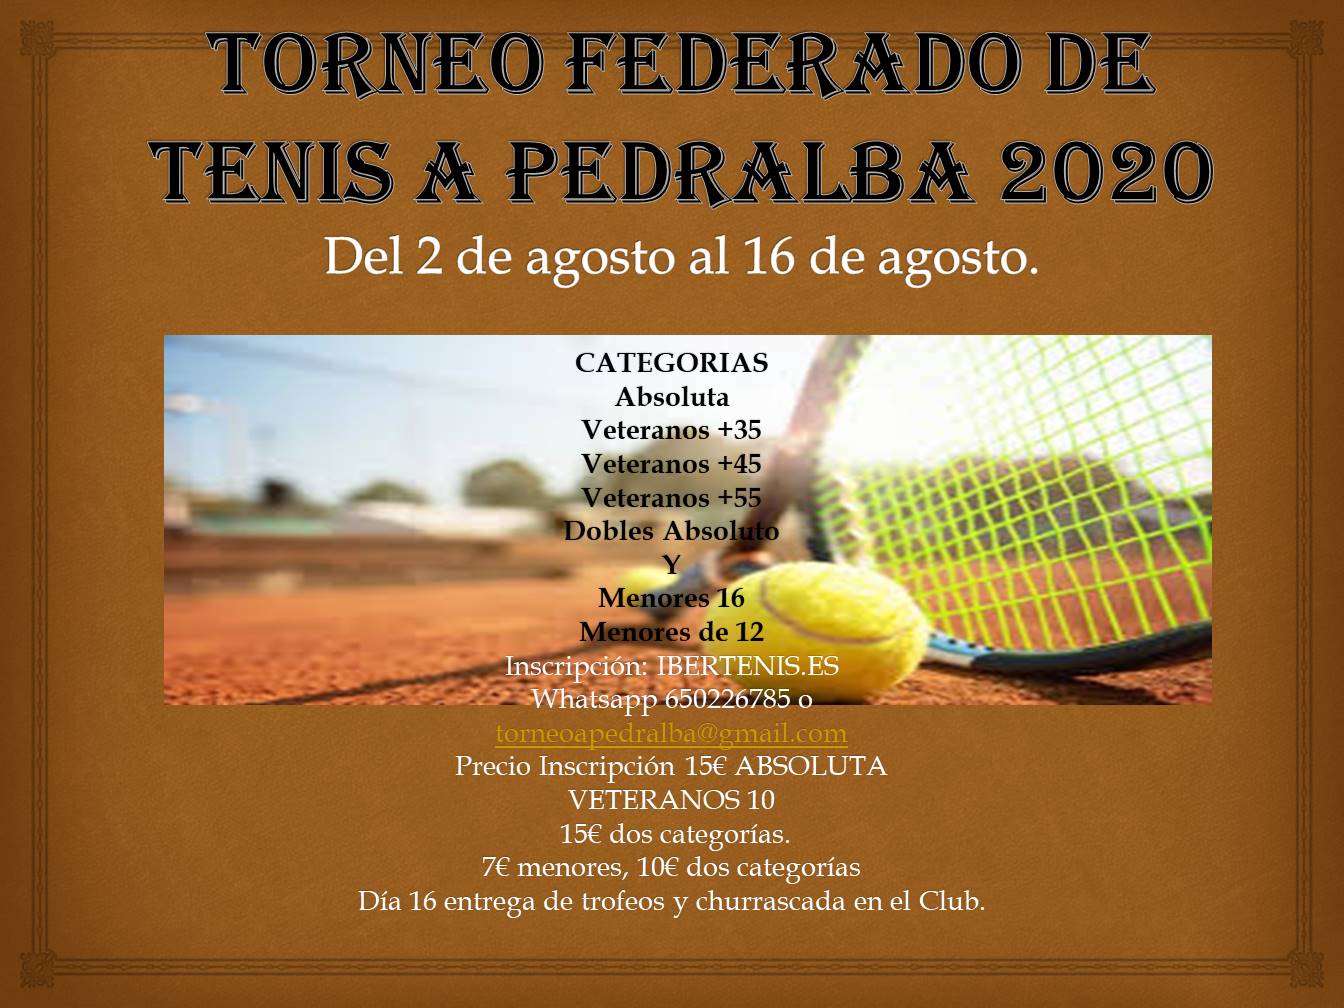 Torneo Federado de tenis A Pedralba 2020